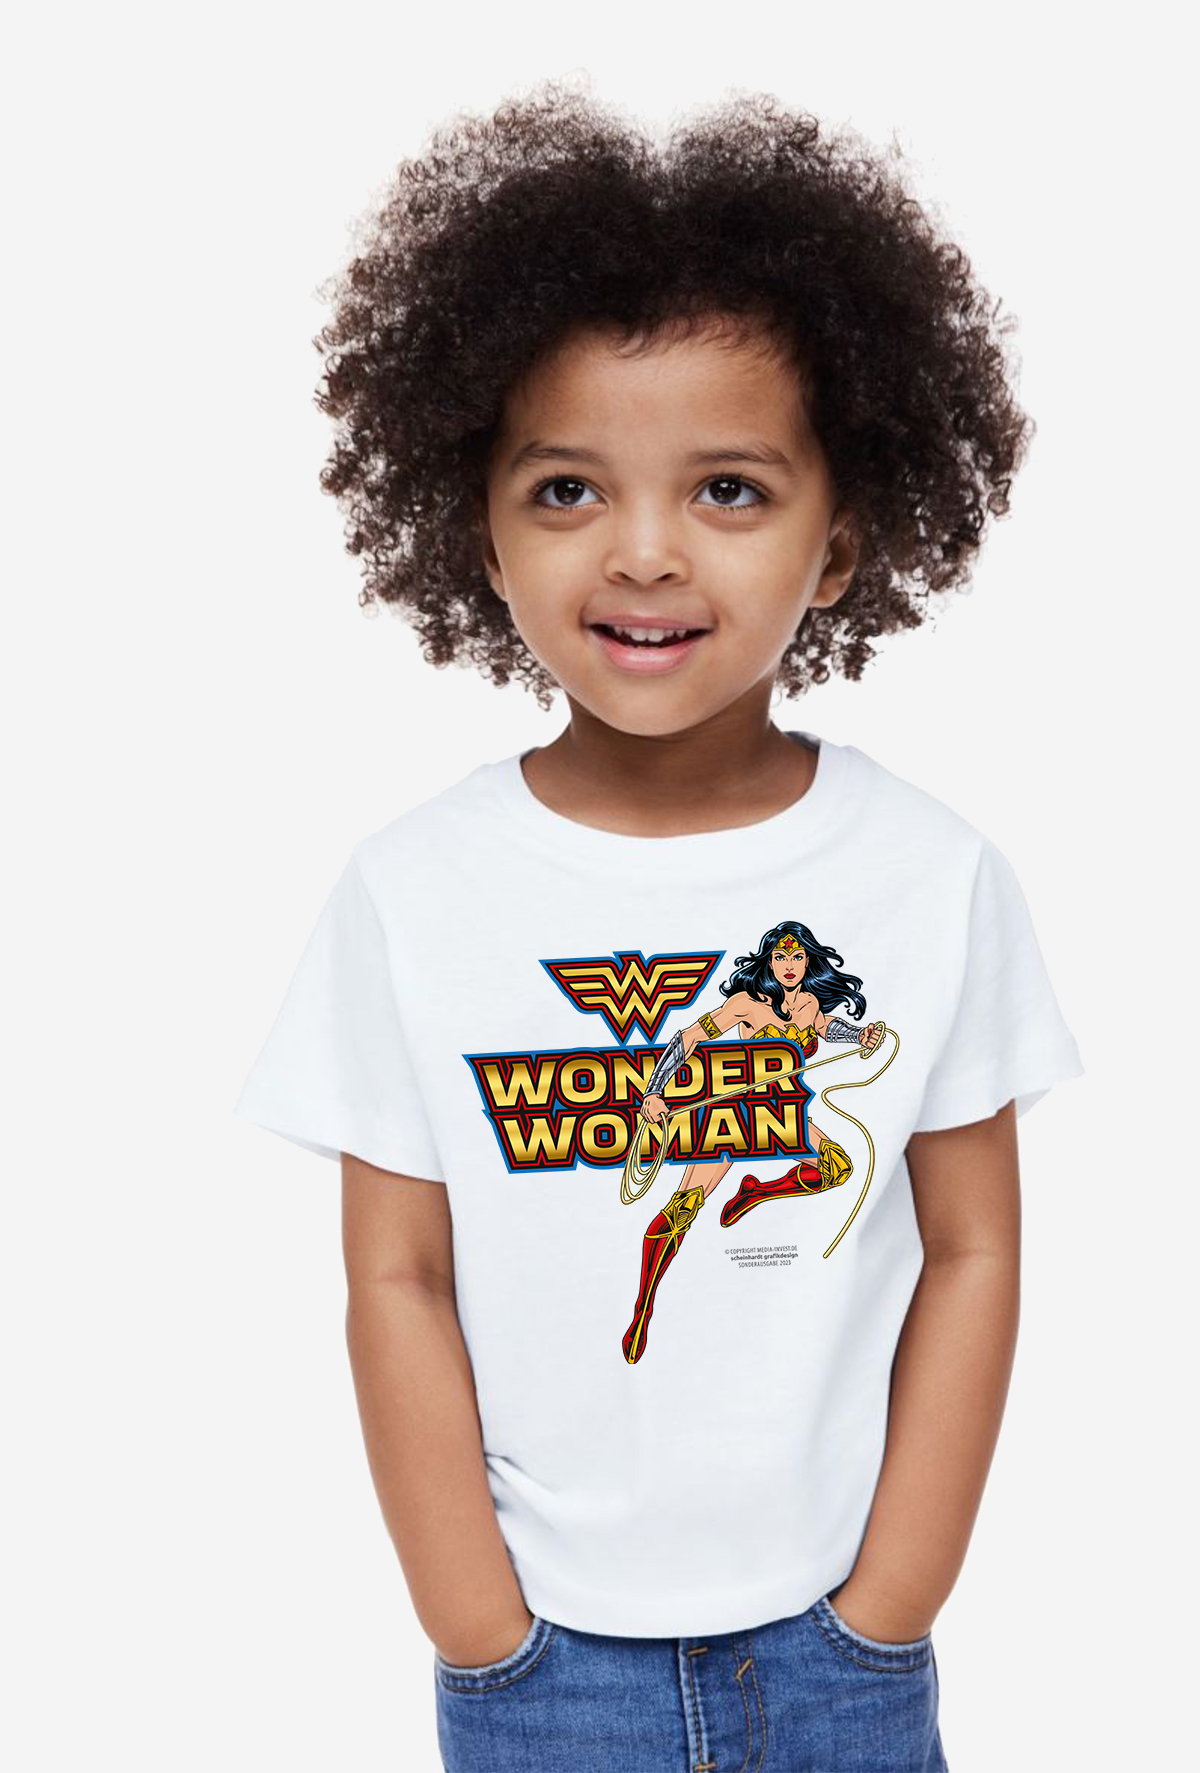 Kind in T-Shirt Wonderwoman